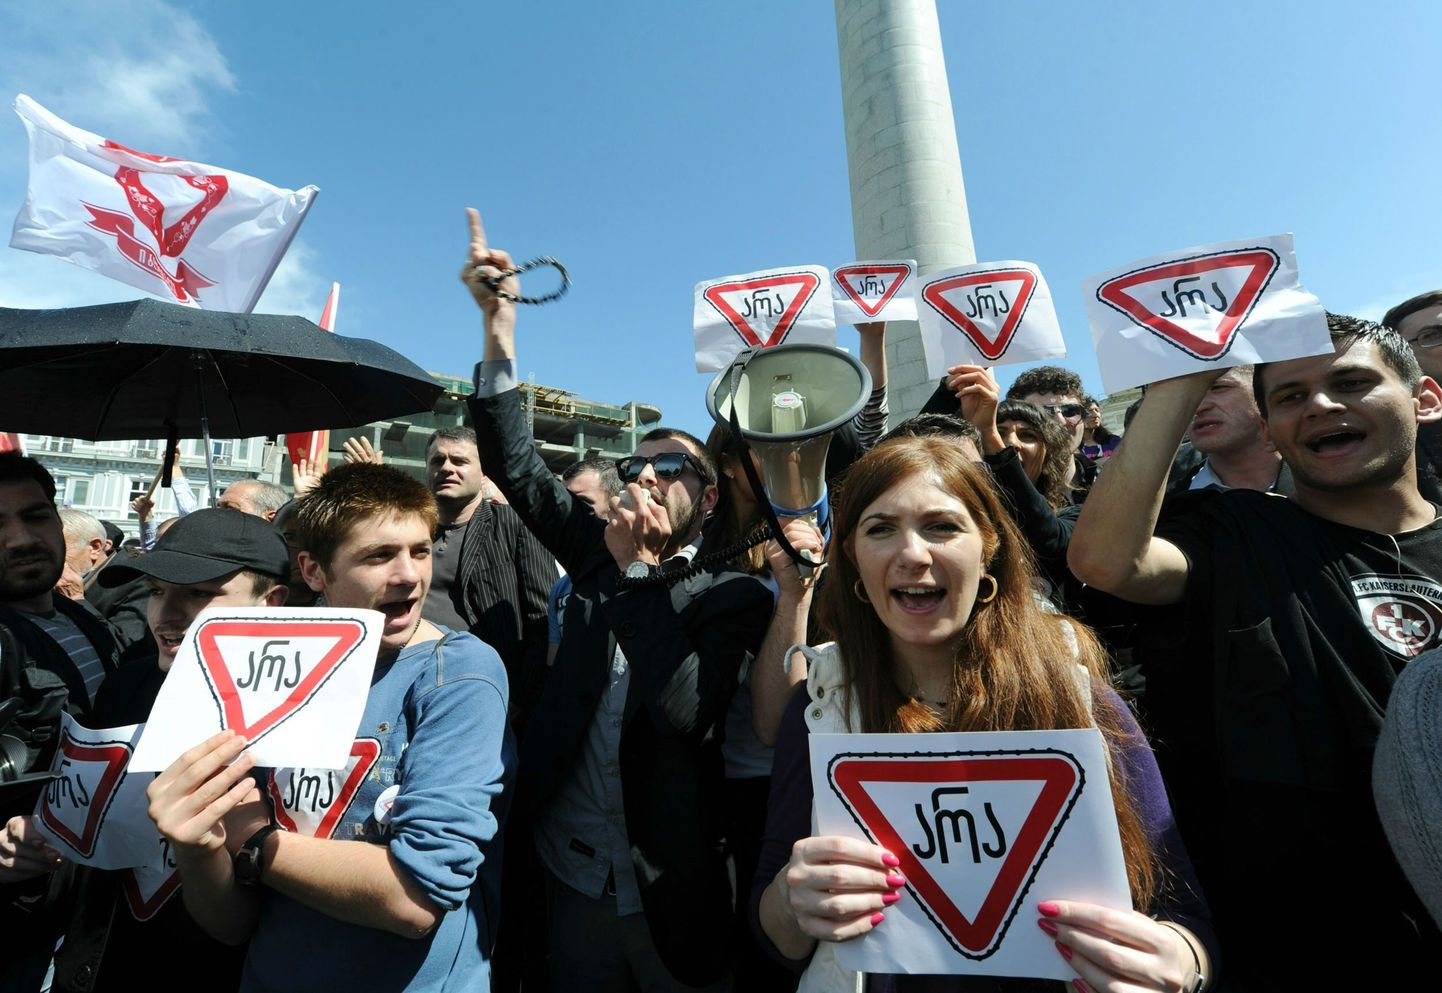 Gruusia opositsiooniaktivistid Saakašvili-vastasel meeleavaldusel. Plakatitel seisab: «Ei».